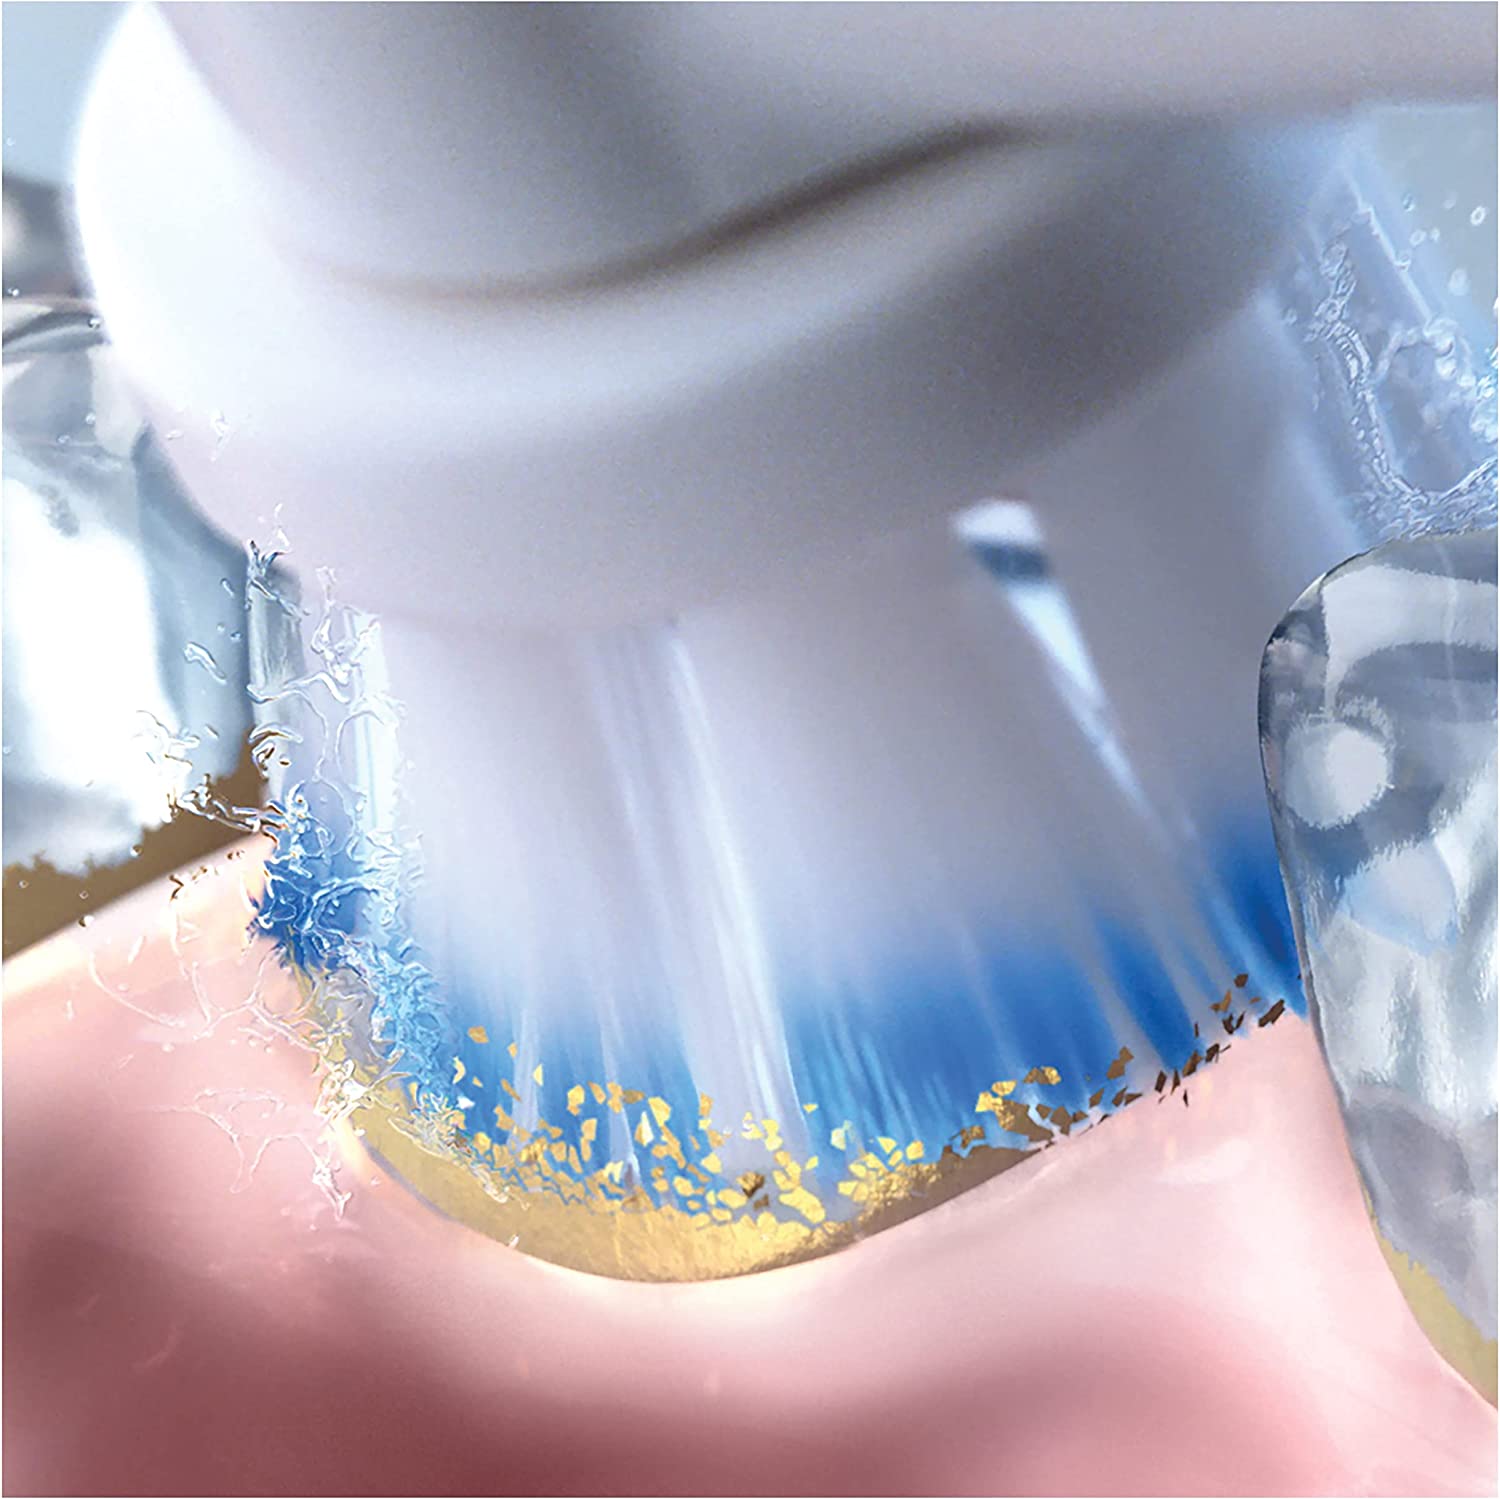 Oral-B Sensitive Clean Aufsteckbürsten (2x4er Pack)